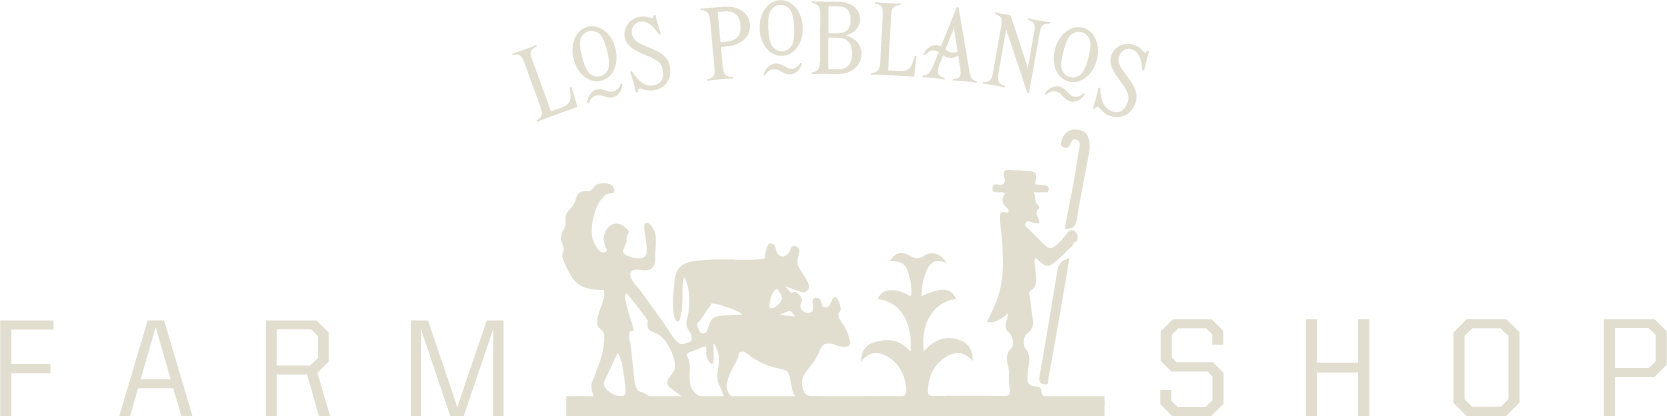 Los Poblanos Farm Shop Logo